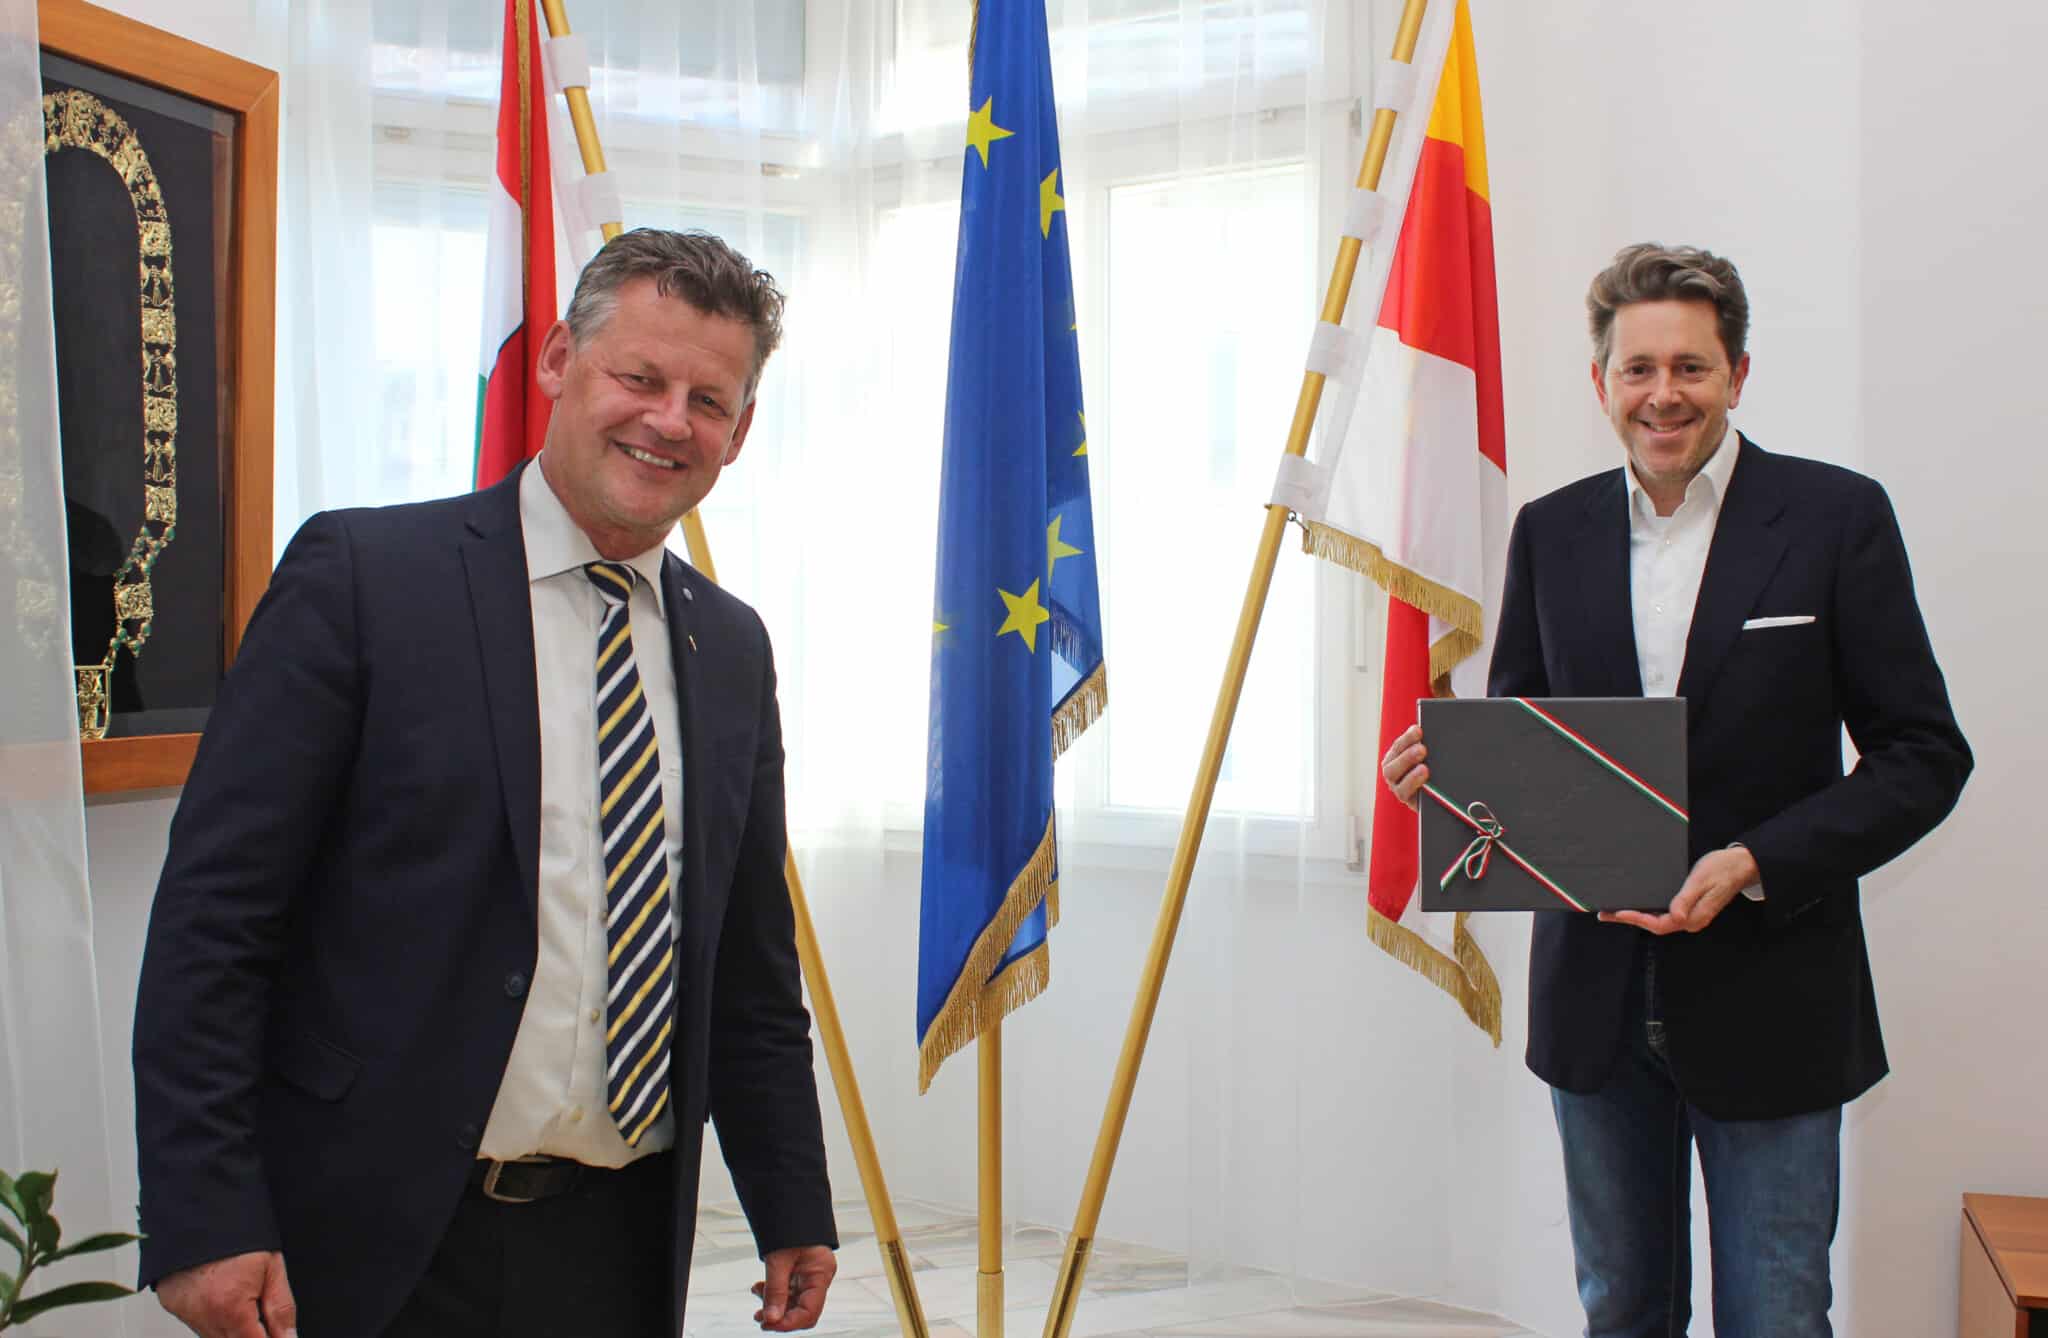 Bürgermeister Christian Scheider hieß Dr. Harald Mahrer, Präsident der
Österreichischen Wirtschaftskammer, herzlich in Klagenfurt willkommen. Als
Willkommensgeschenk erhielt Mahrer ein Klagenfurt-Buch.